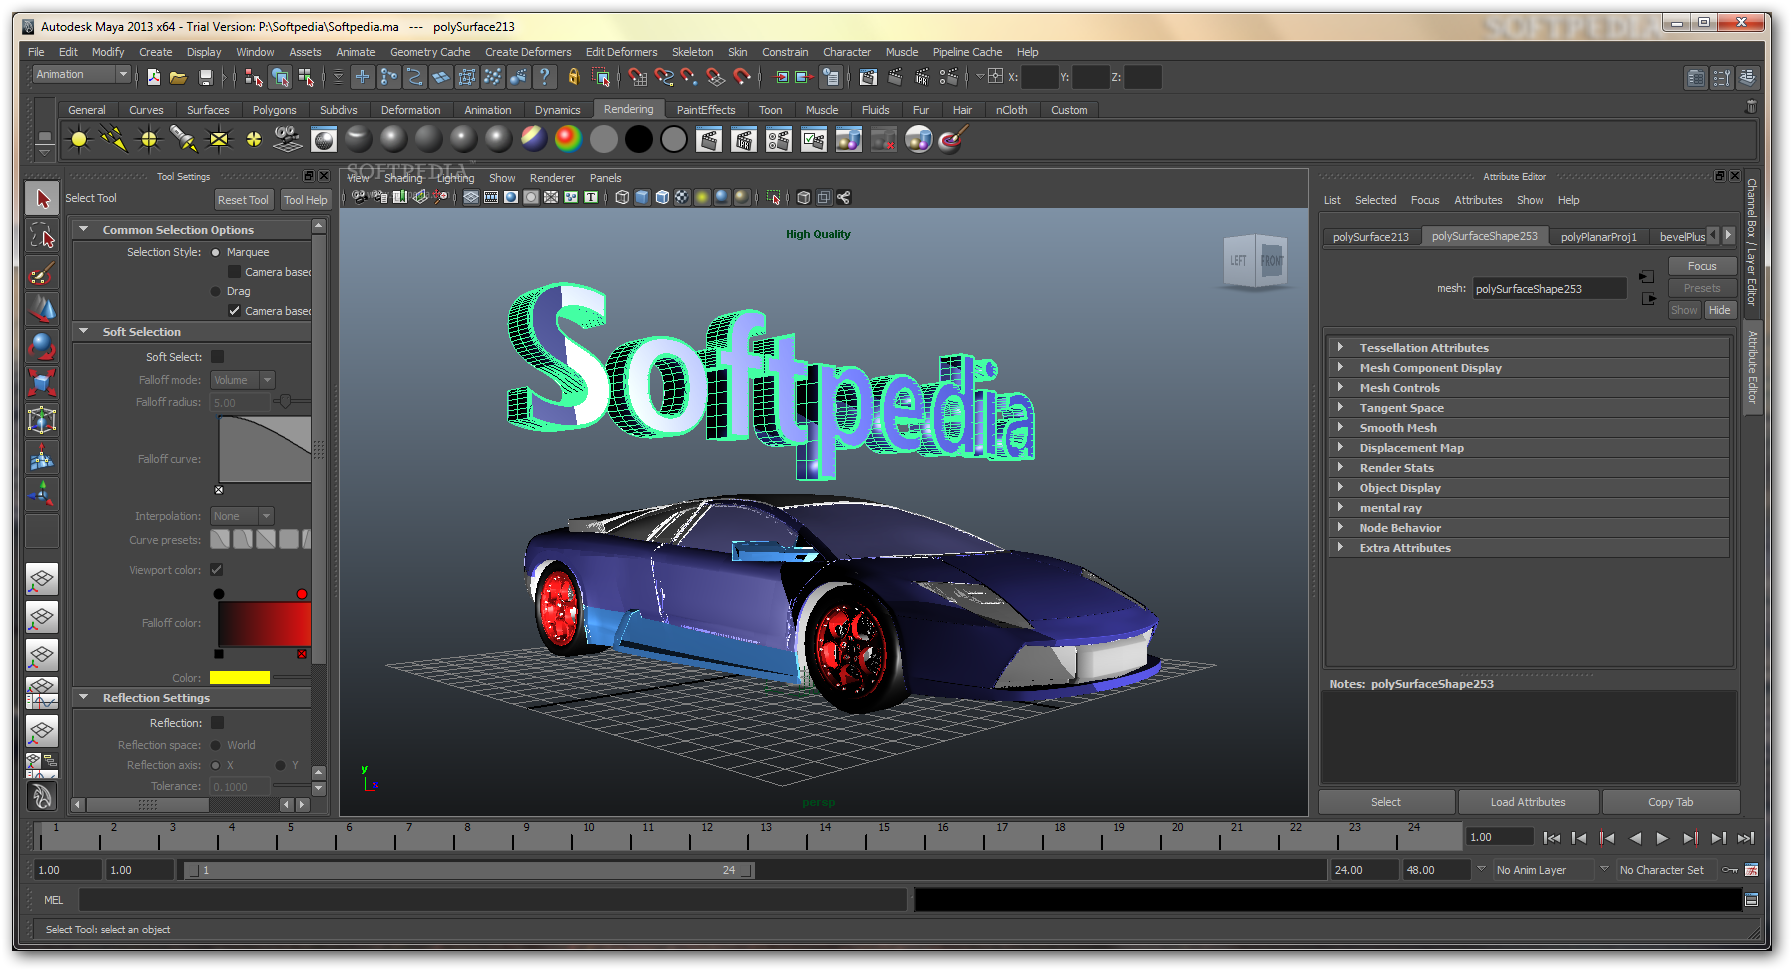 Autodesk Entertainment Creation Suite 2016 Ultimate 64 bit